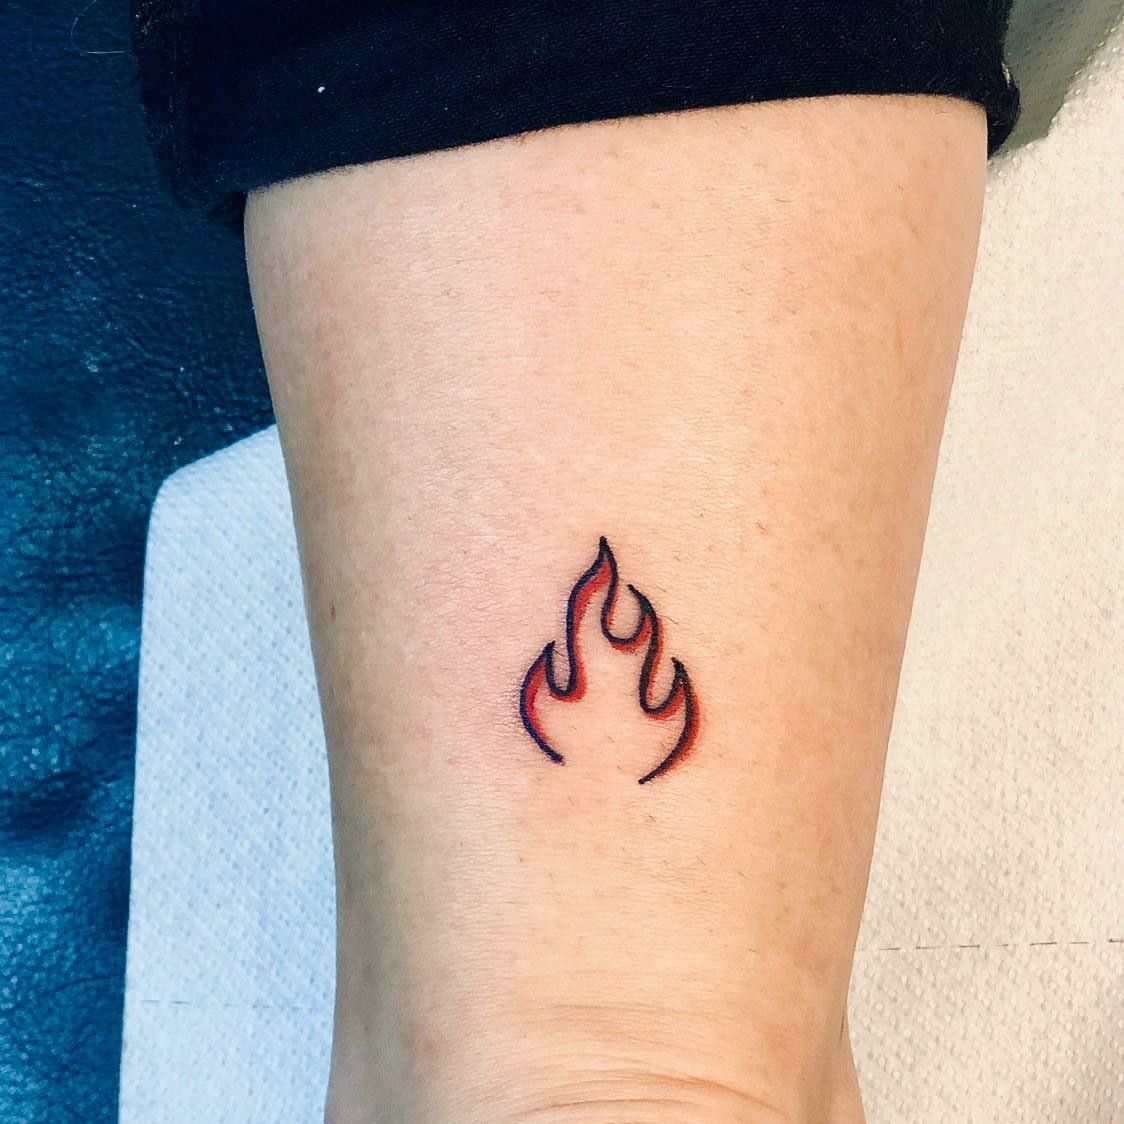 Significado da tatuagem de fogo